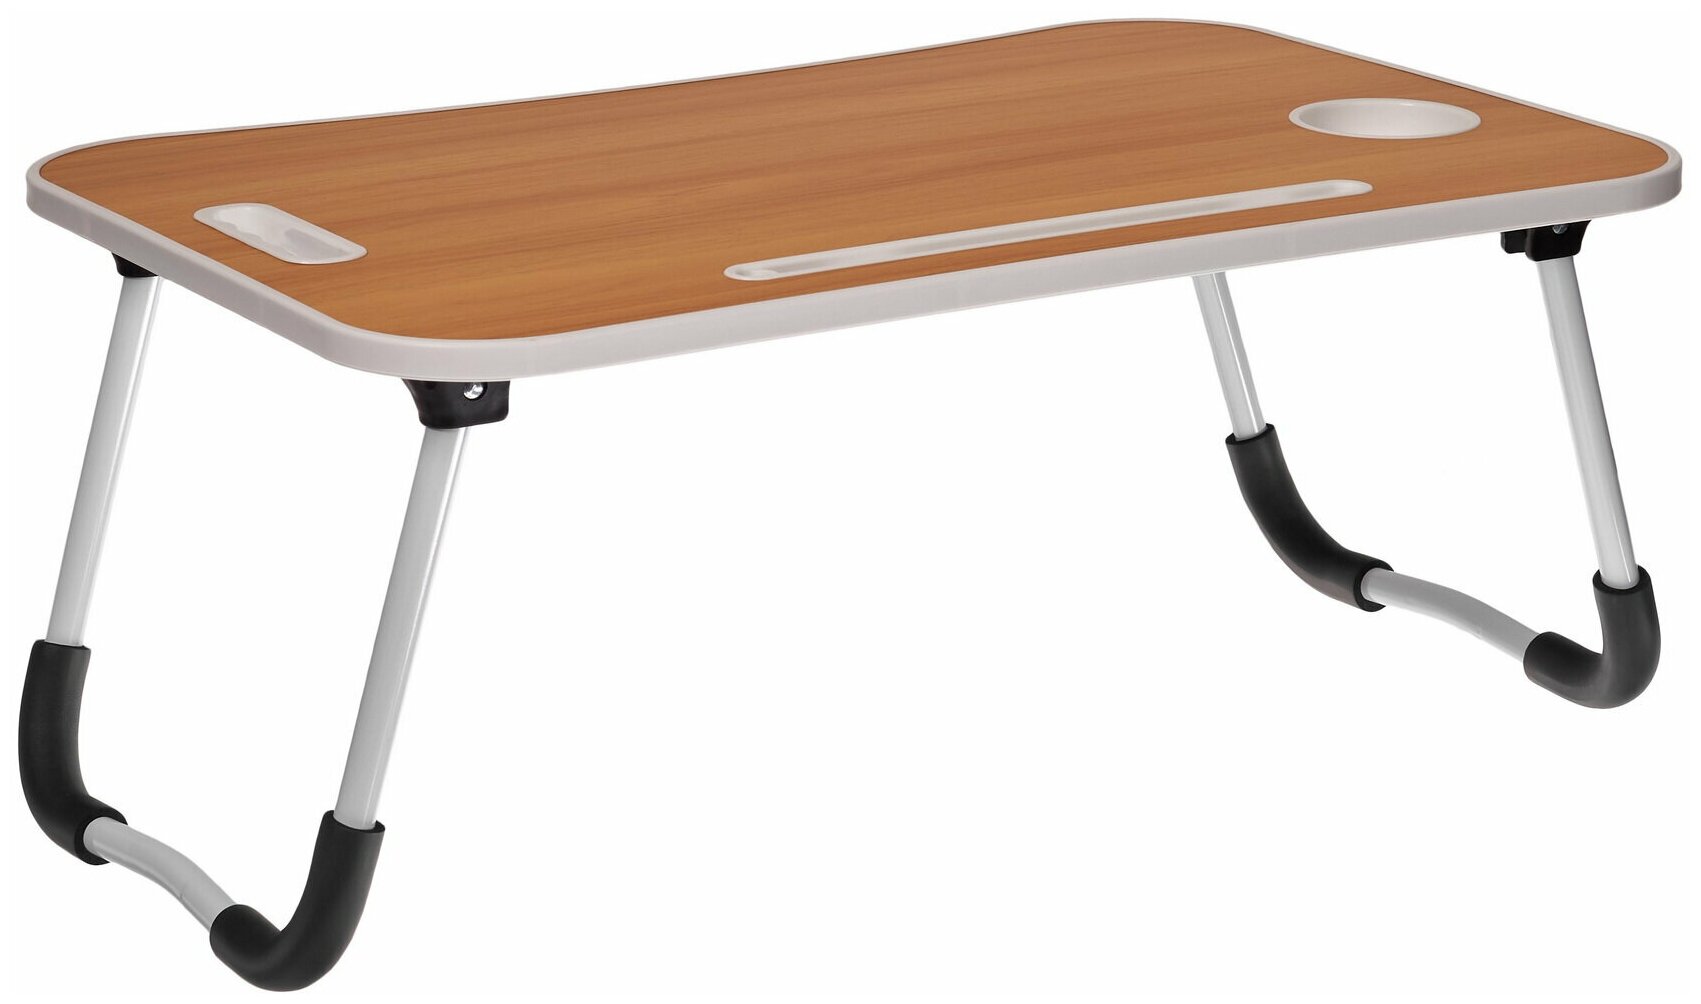 Складной столик для ноутбука, коричневый (TD 0726)